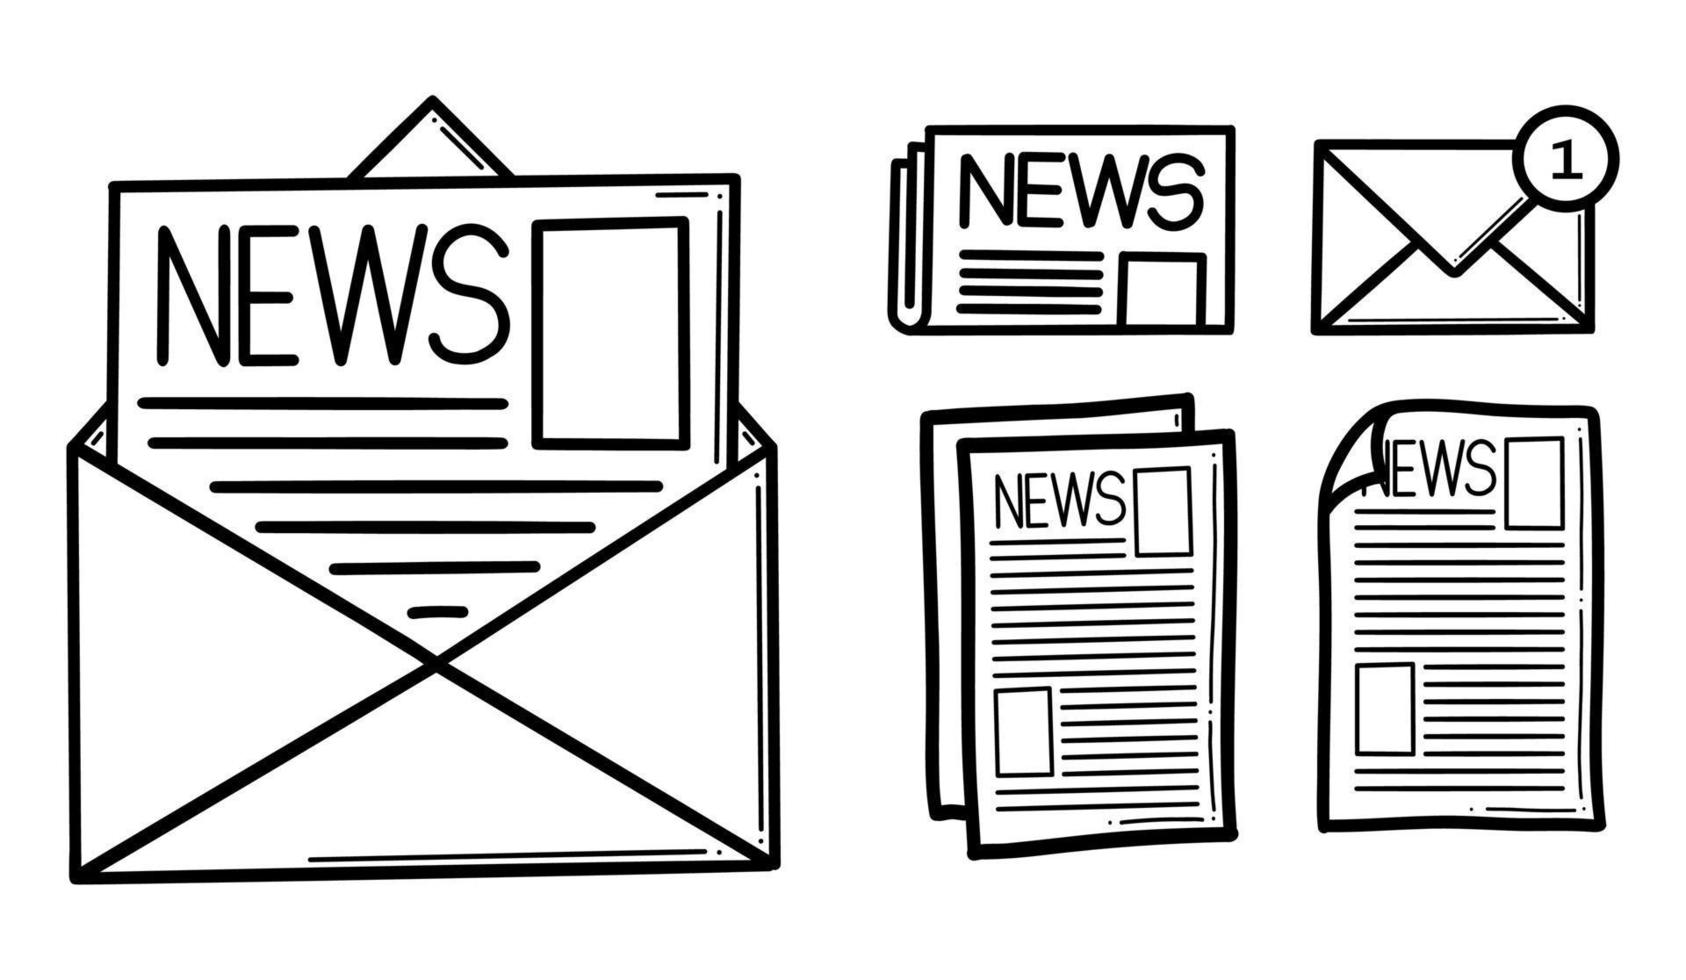 icône de vecteur de ligne de newsletter. e-mail de contour. enveloppe avec signe de vecteur de lettre, pictogramme de style linéaire